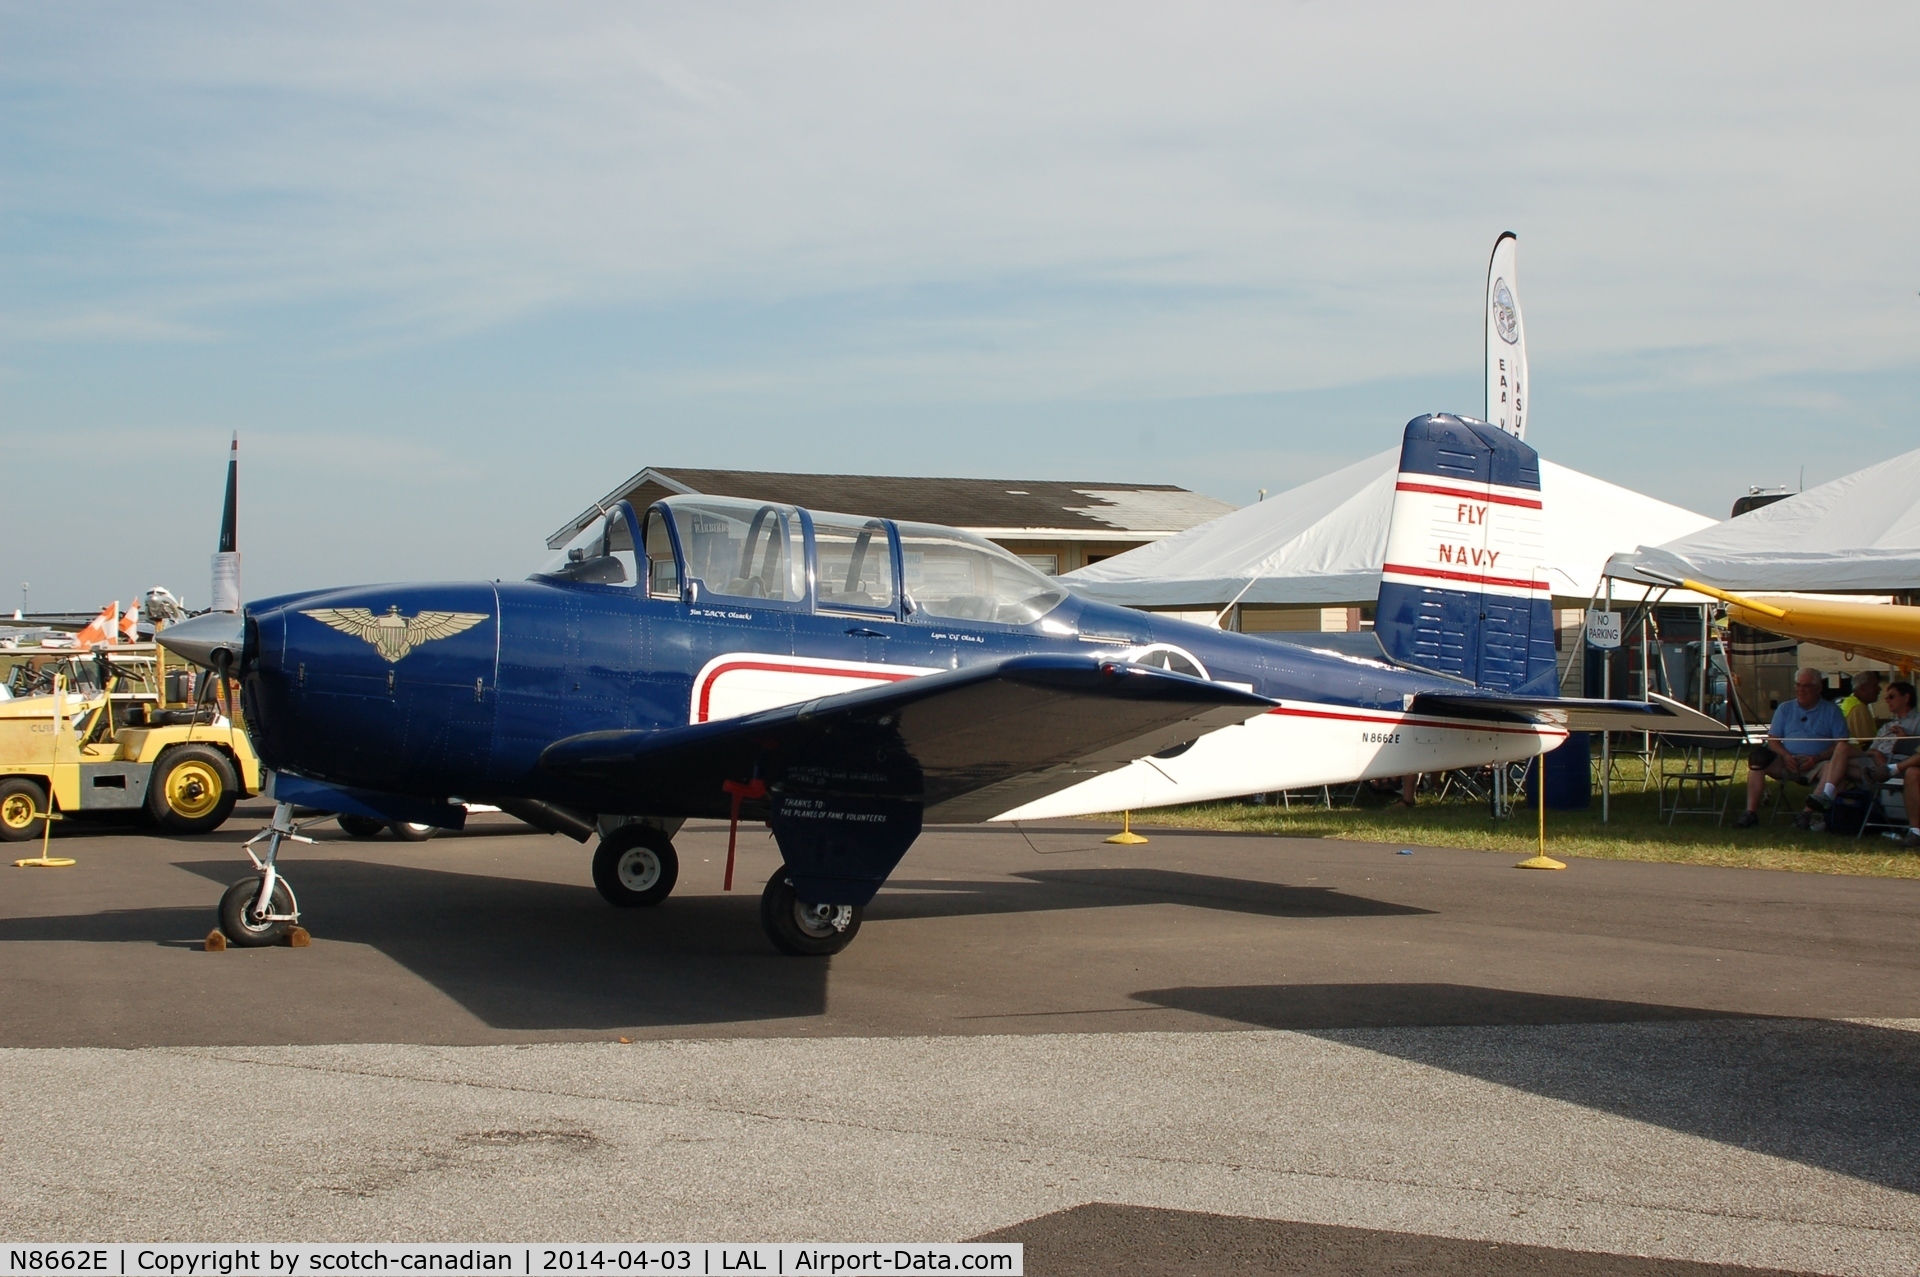 N8662E, 1955 Beech D-45 Mentor C/N BG-33, Beech D-45, N8662E, at 2014 Sun n Fun, Lakeland Linder Regional Airport, Lakeland, FL